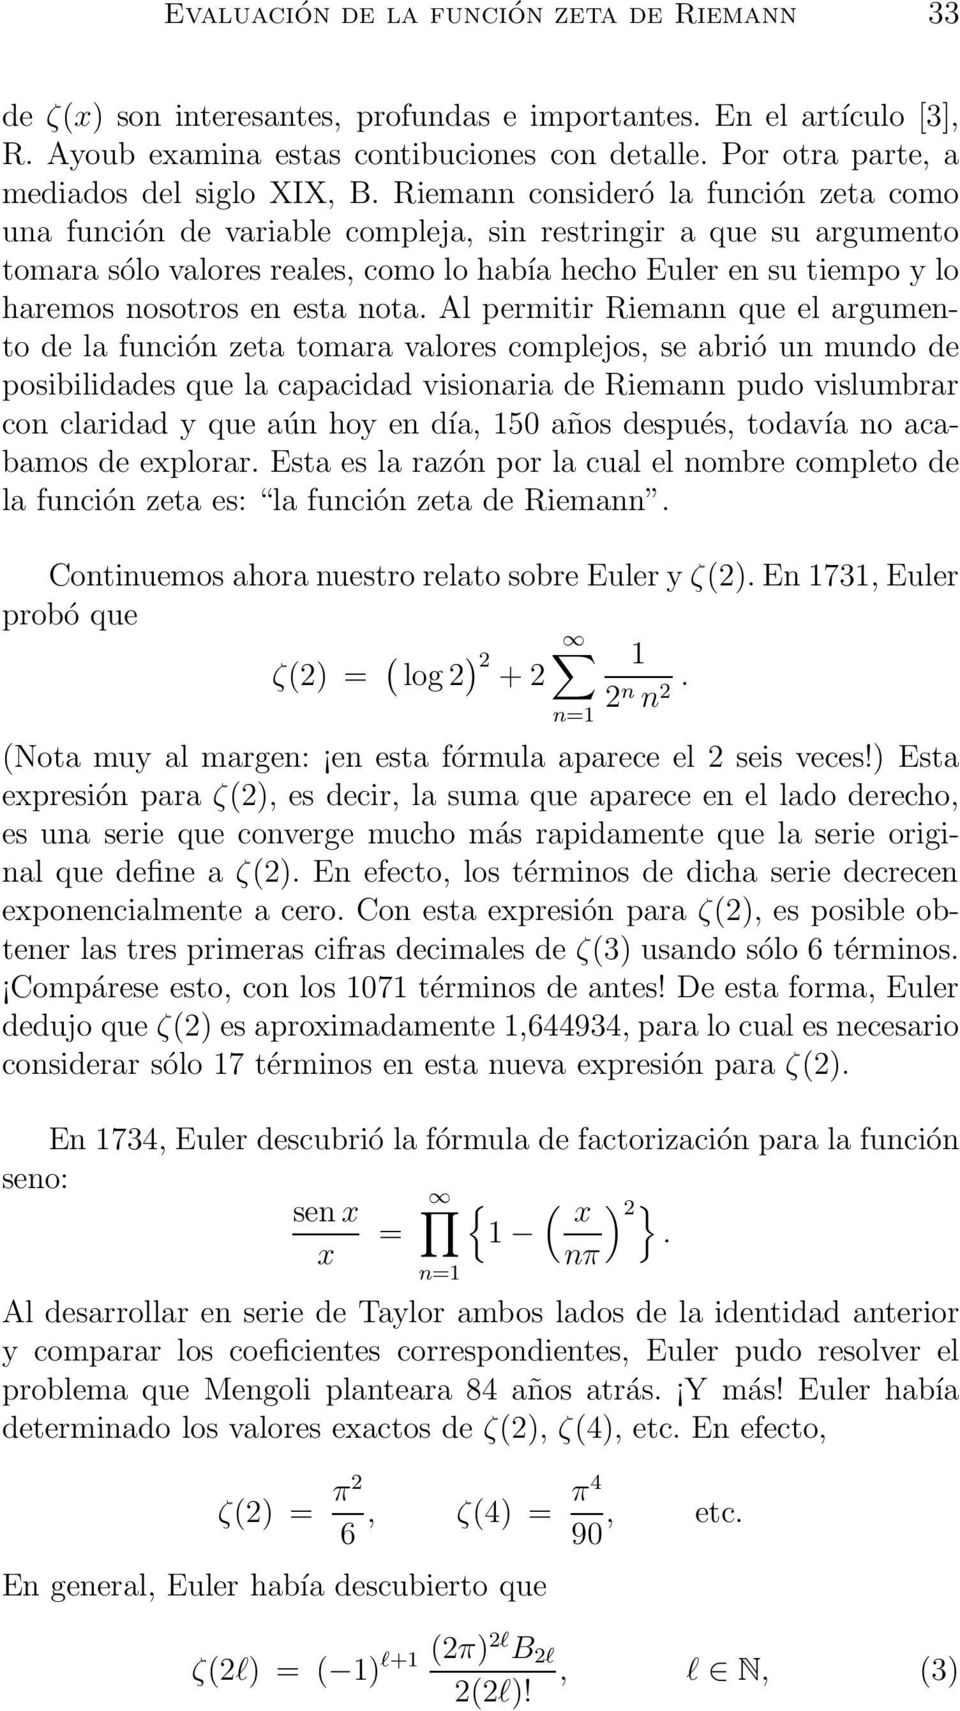 Riemann consideró la función zeta como una función de variable compleja, sin restringir a que su argumento tomara sólo valores reales, como lo había hecho Euler en su tiempo y lo haremos nosotros en